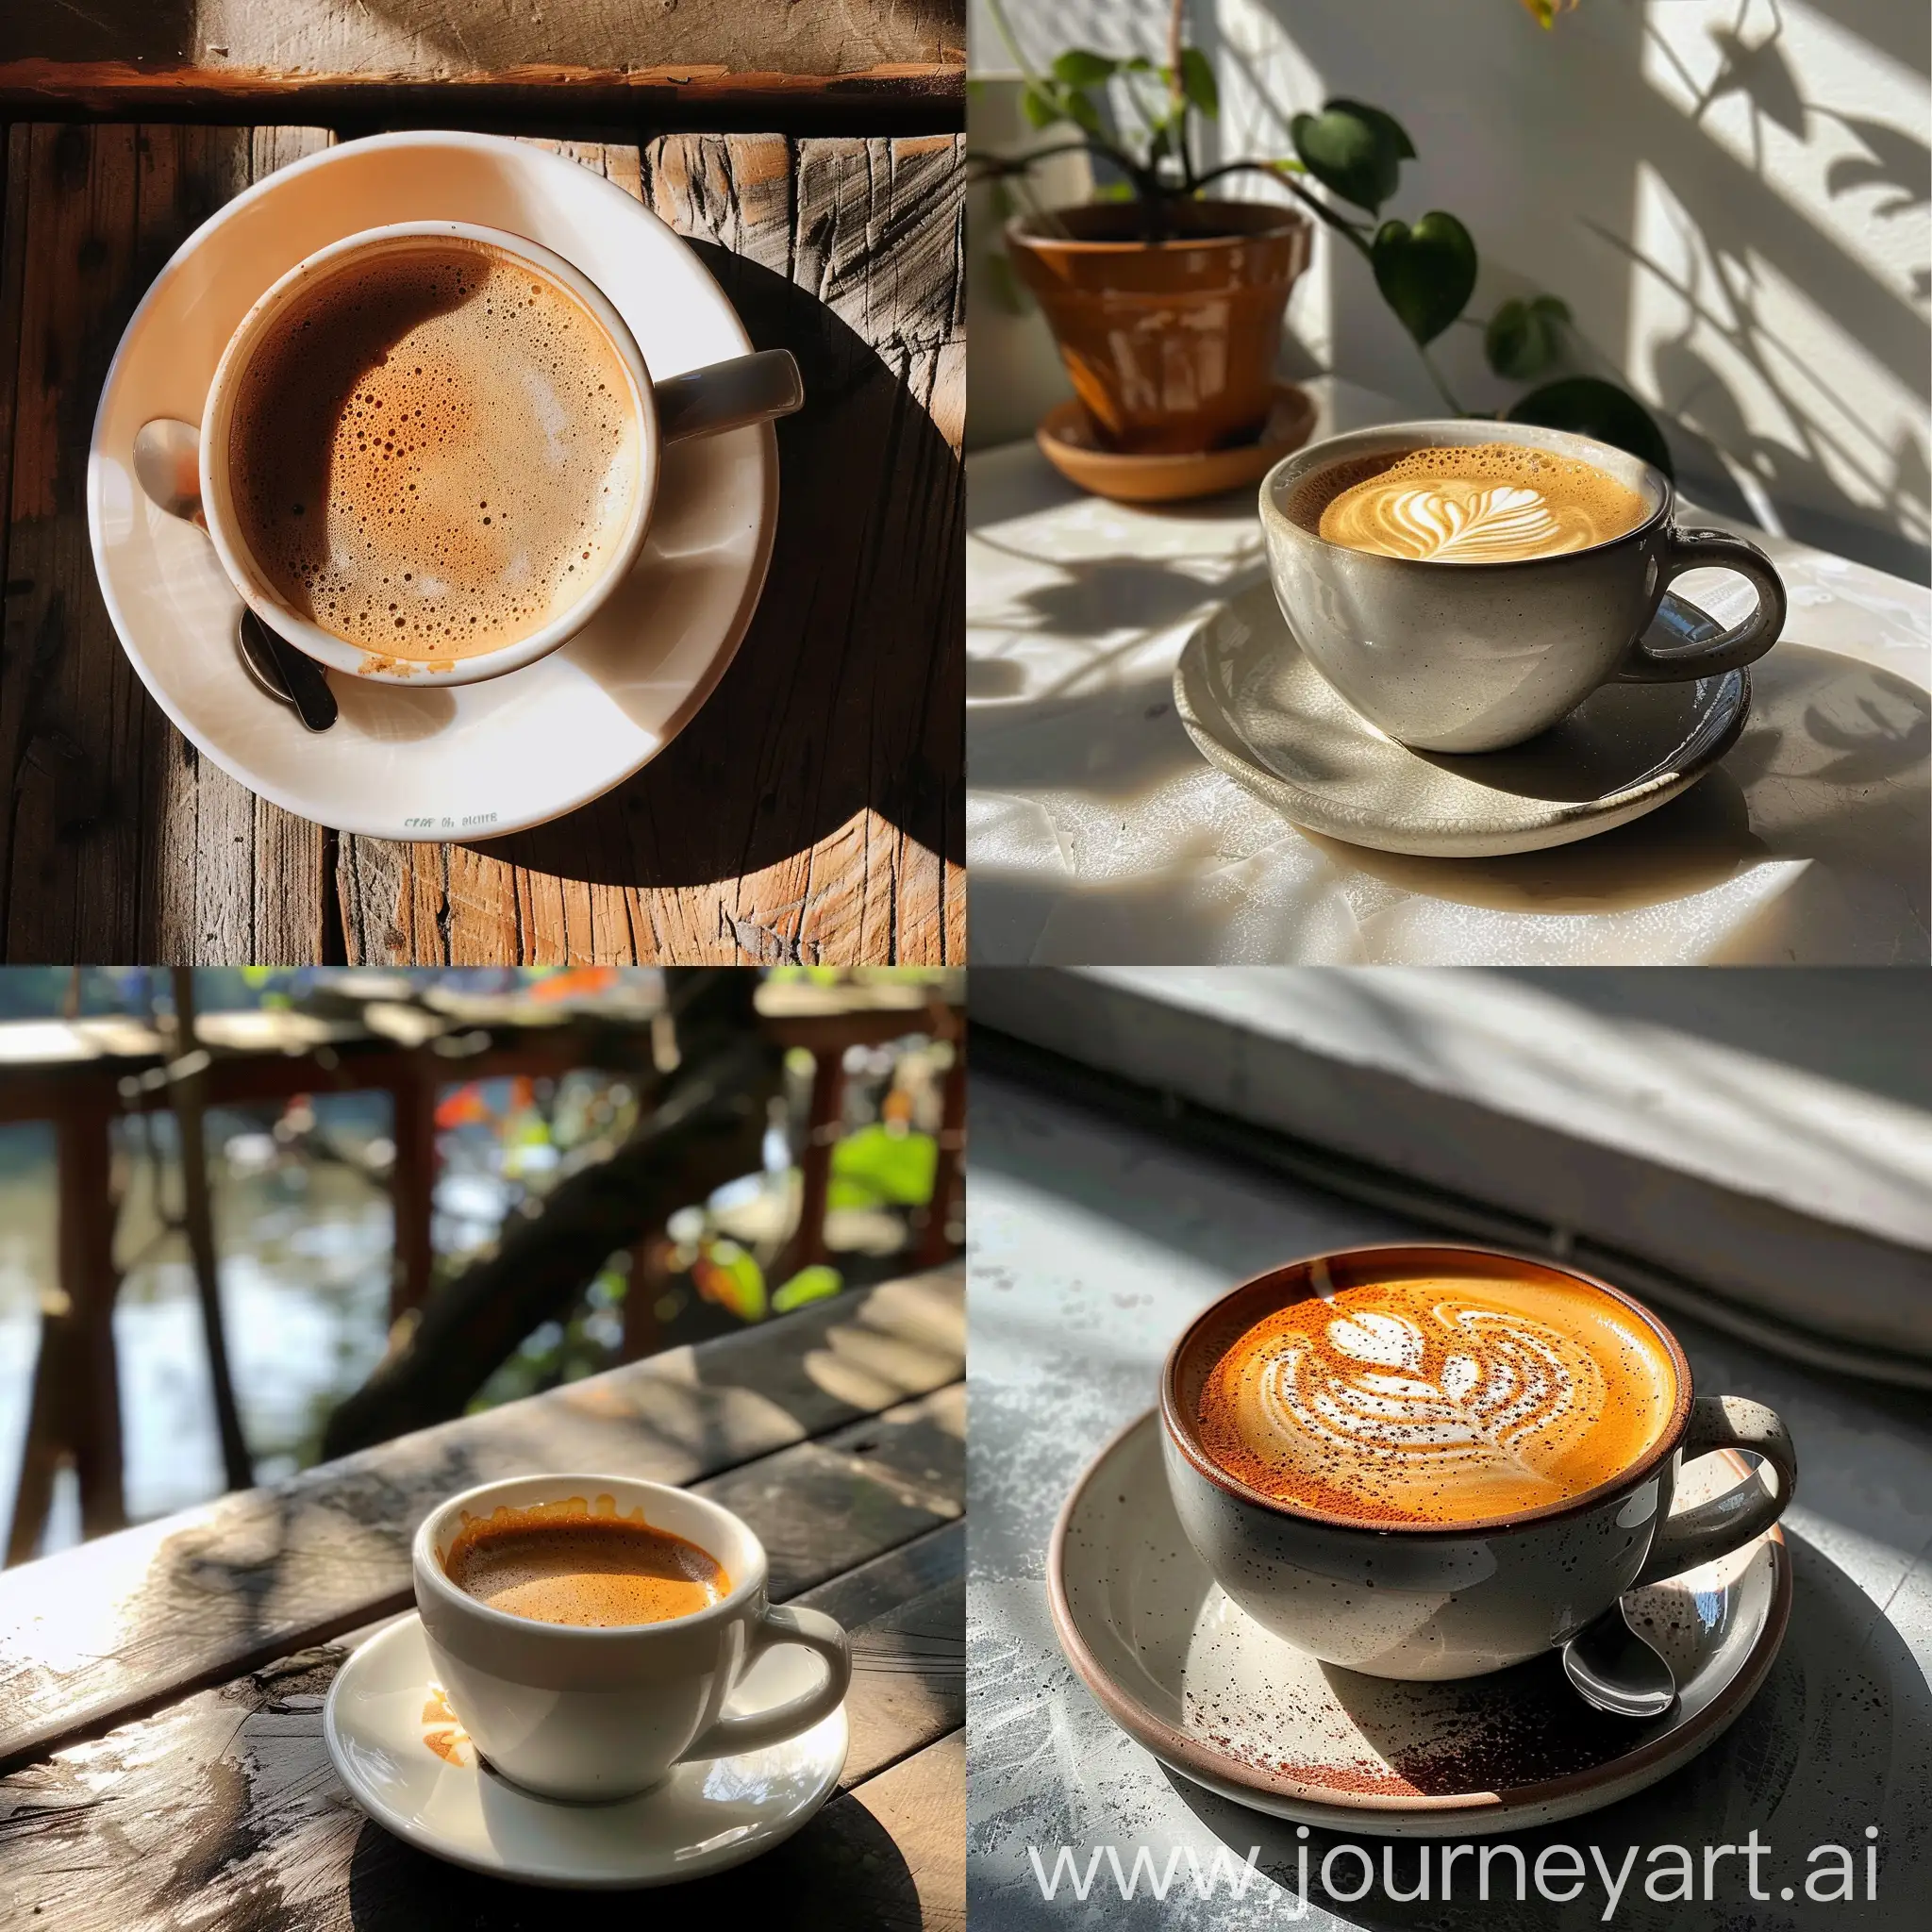 Sunlit-Coffee-Mug-on-a-Rustic-Table